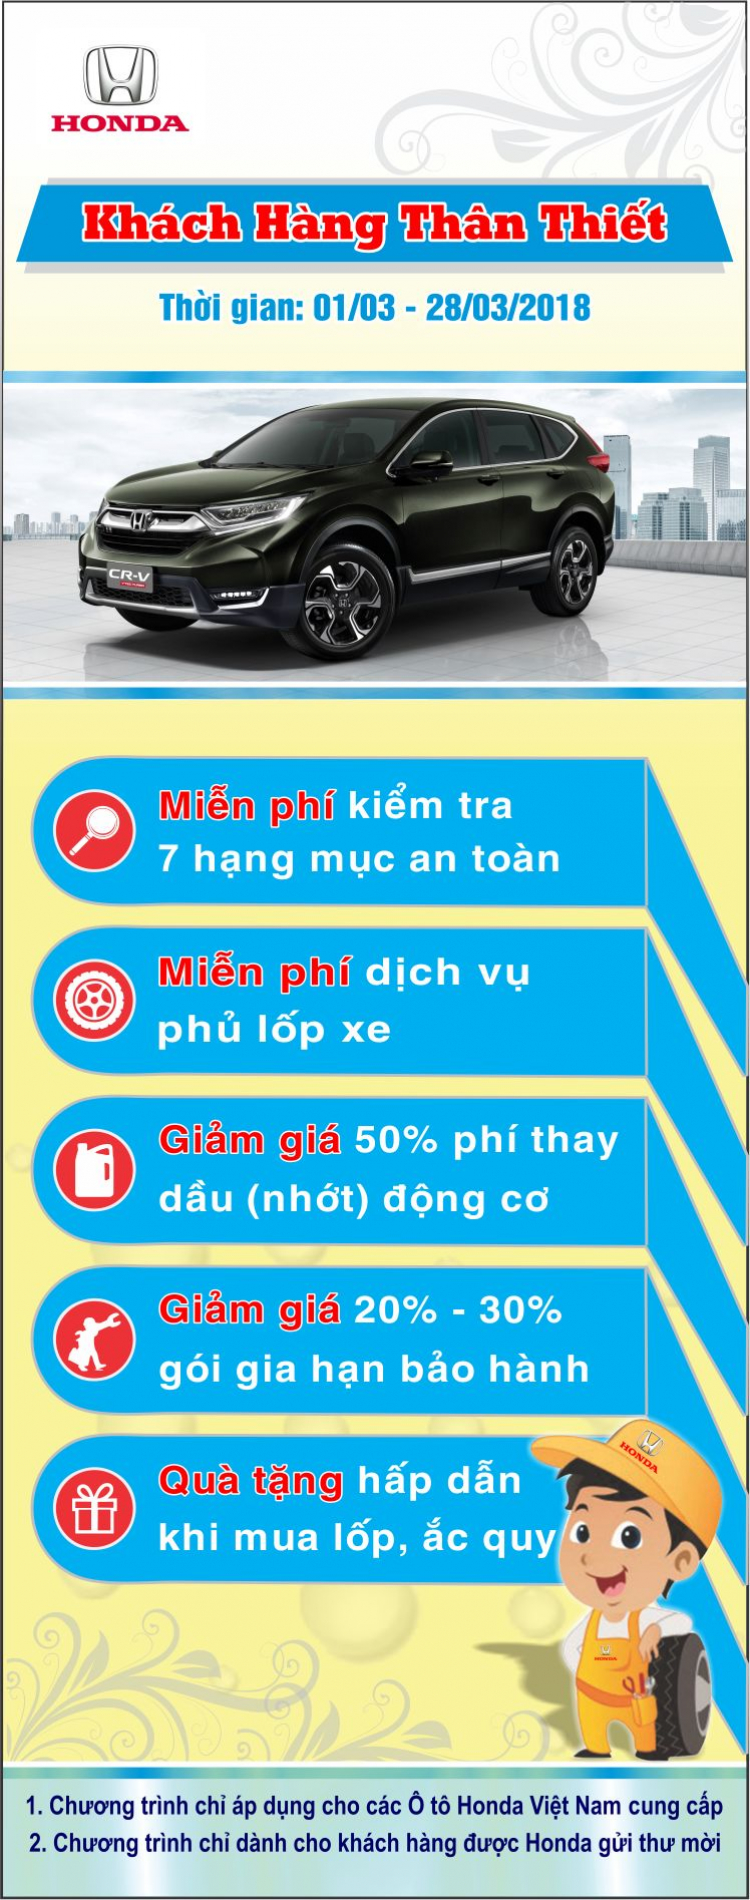 Honda Việt Nam triển khai Chương trình Dịch vụ “Khách hàng thân thiết” từ ngày 01/03 đến 28/03/2018